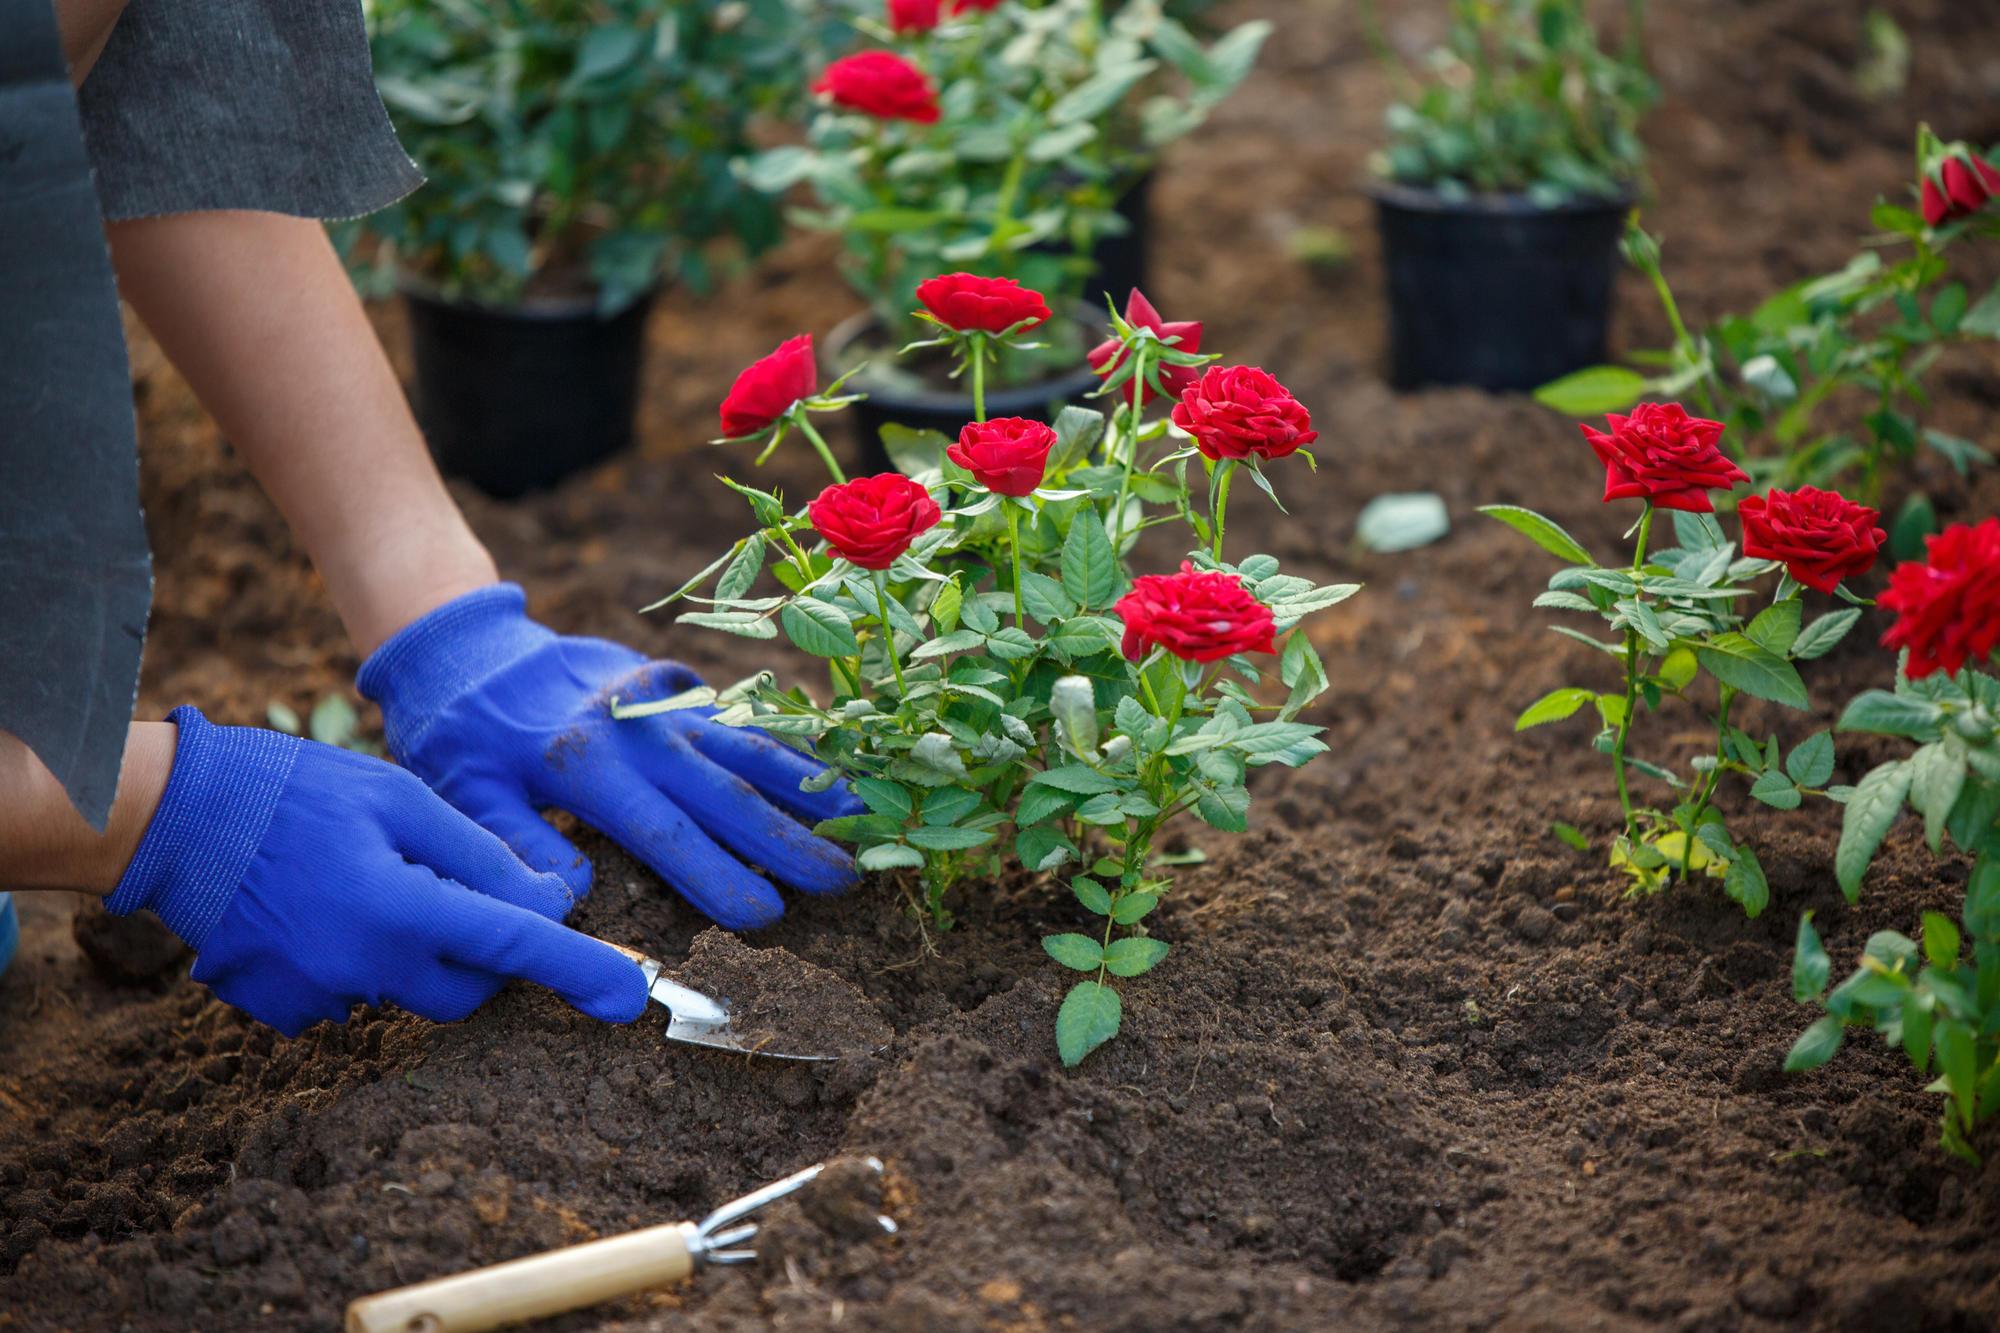 A gardener planting roses in their soil.